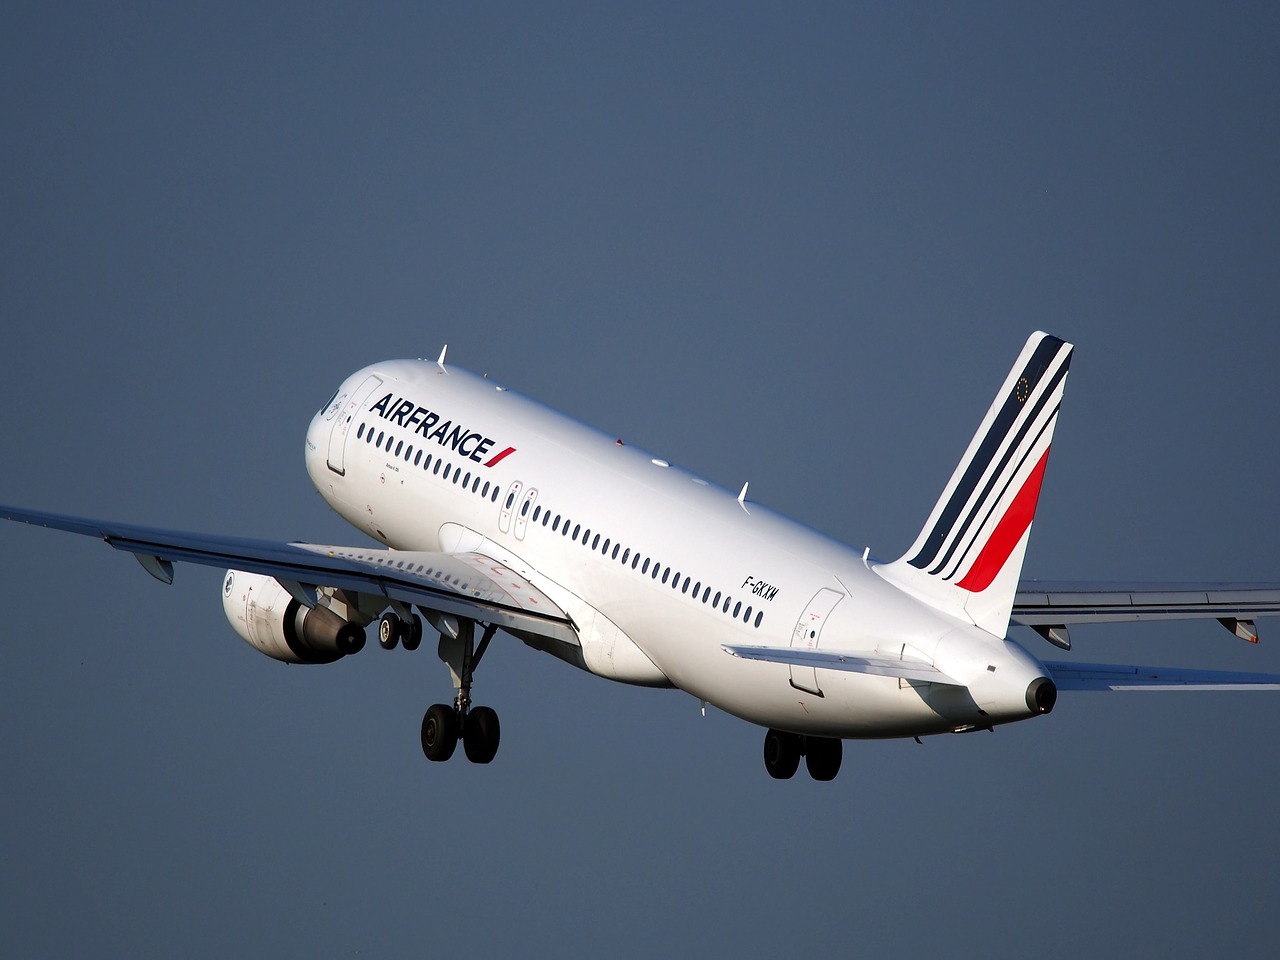 Air France 447